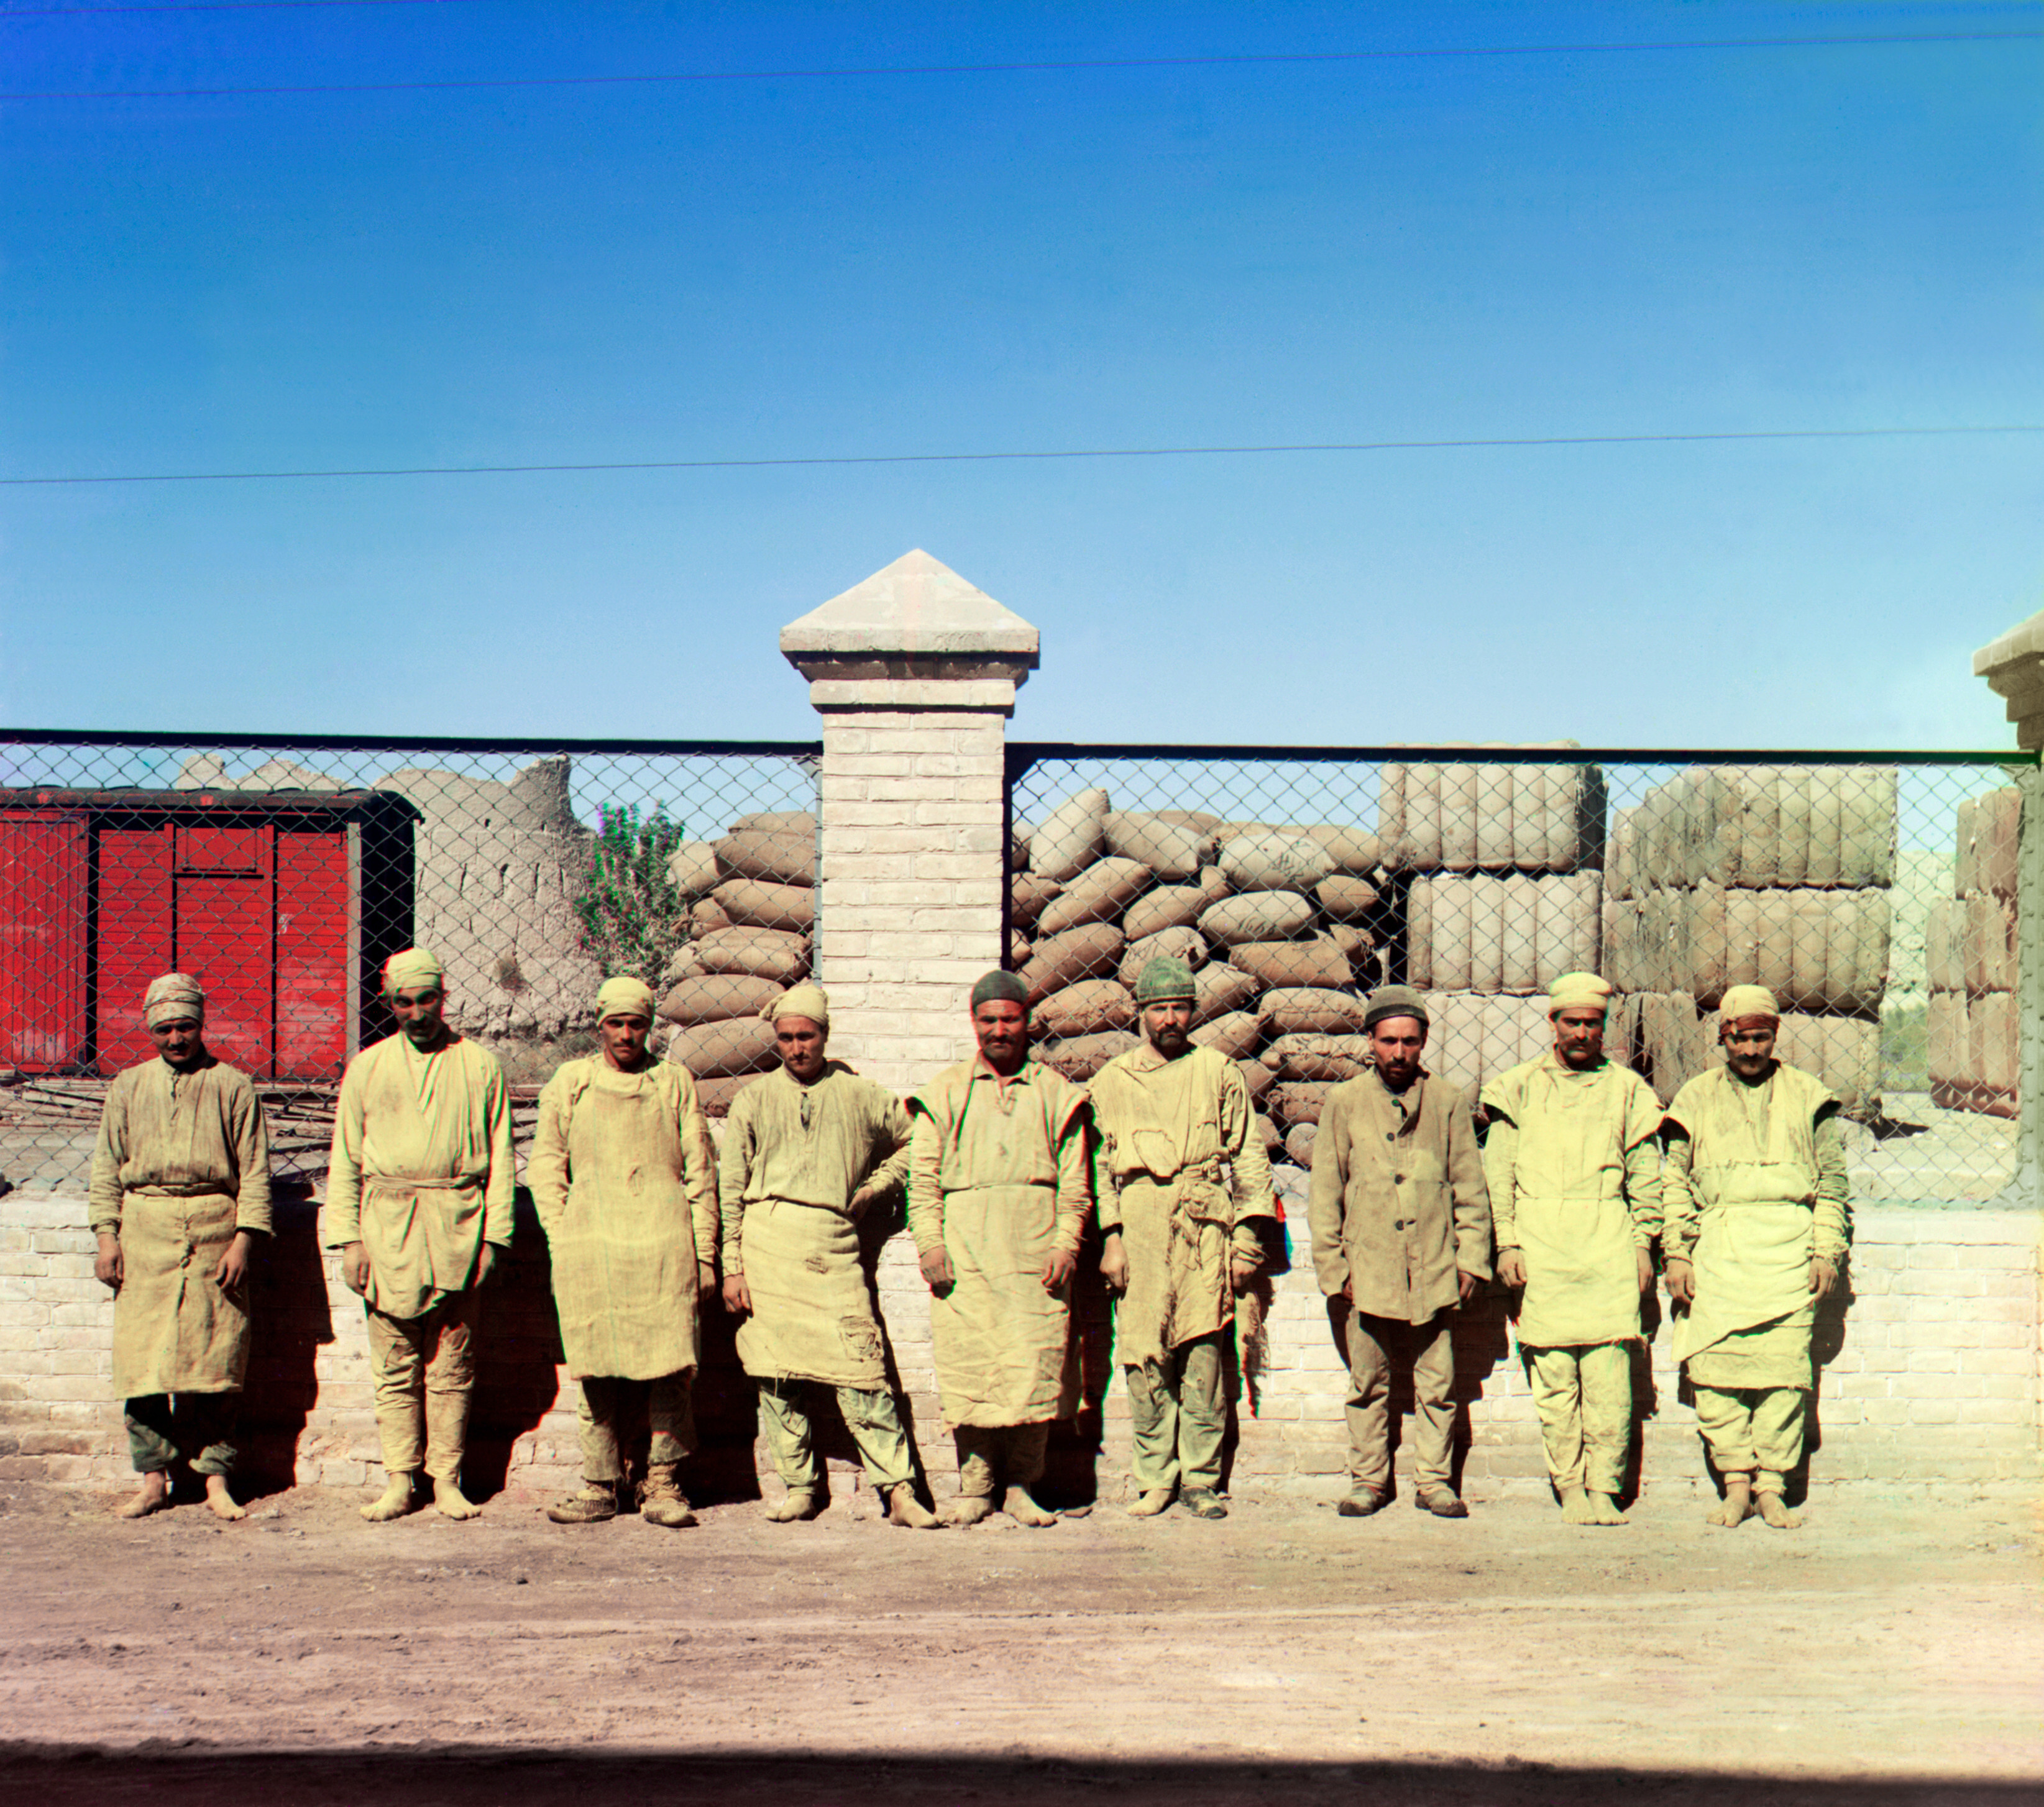 Группа рабочих стоит, позирует, перед сетчатым забором, с мешками, сложенными за забором, 1905-1915, фотограф Сергей Прокудин-Горский